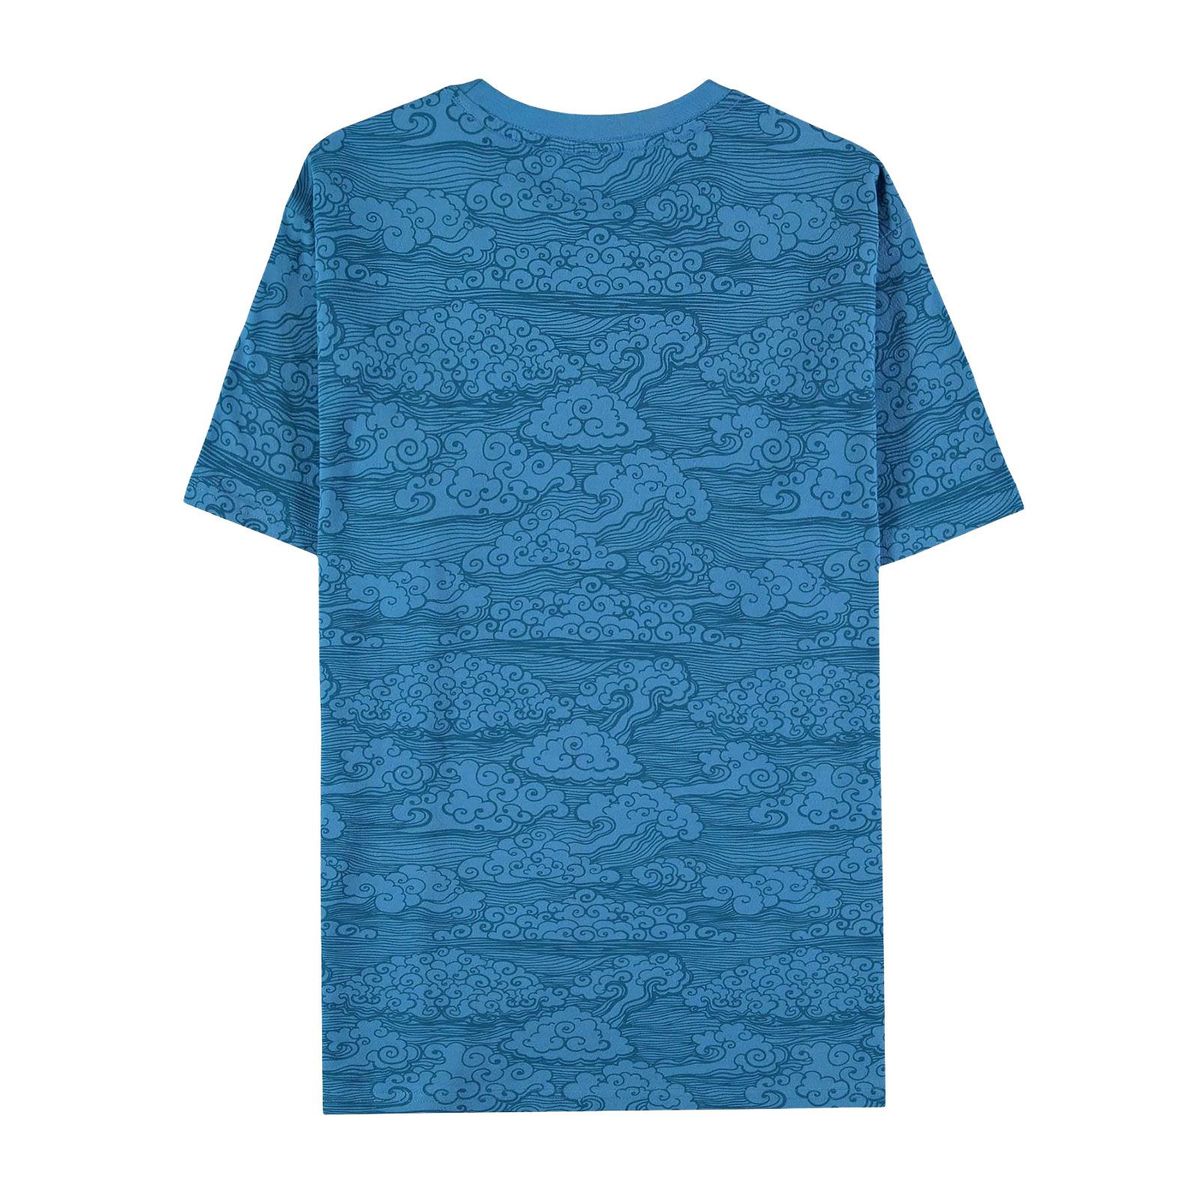 League of Legends - Yasuo blue - T-Shirt | yvolve Shop